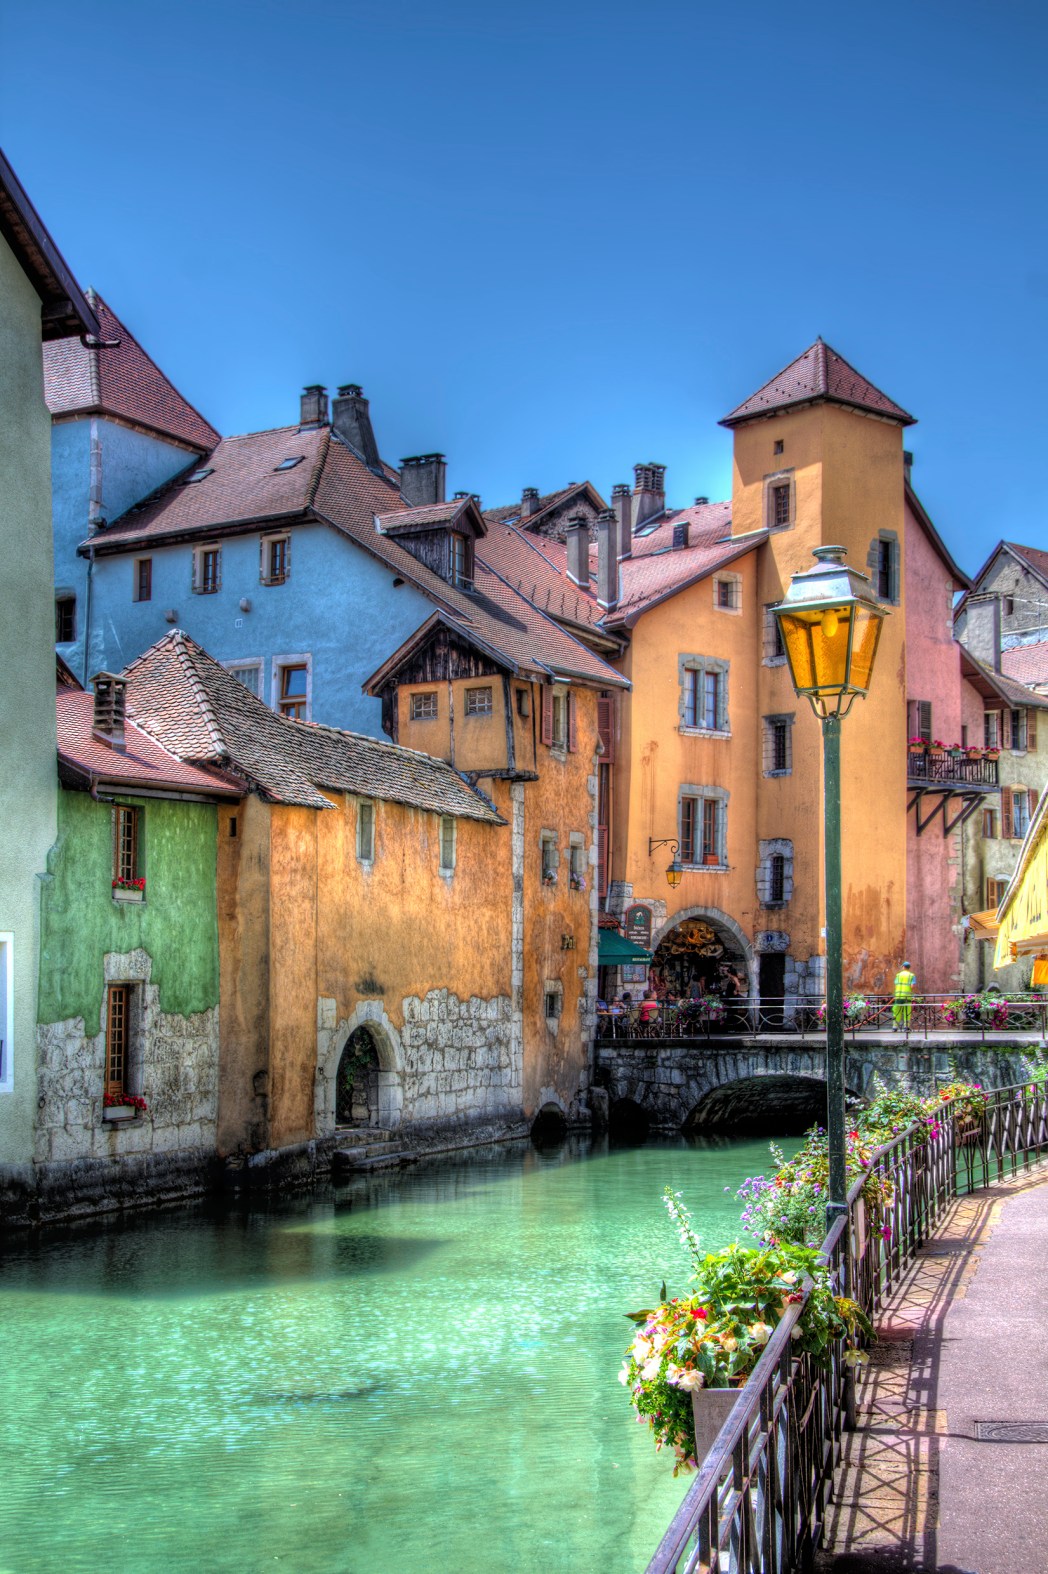 Τα κανάλια και τα πολύχρωμα κτήρια στην παιά πόλη Ανσί της Γαλλίας